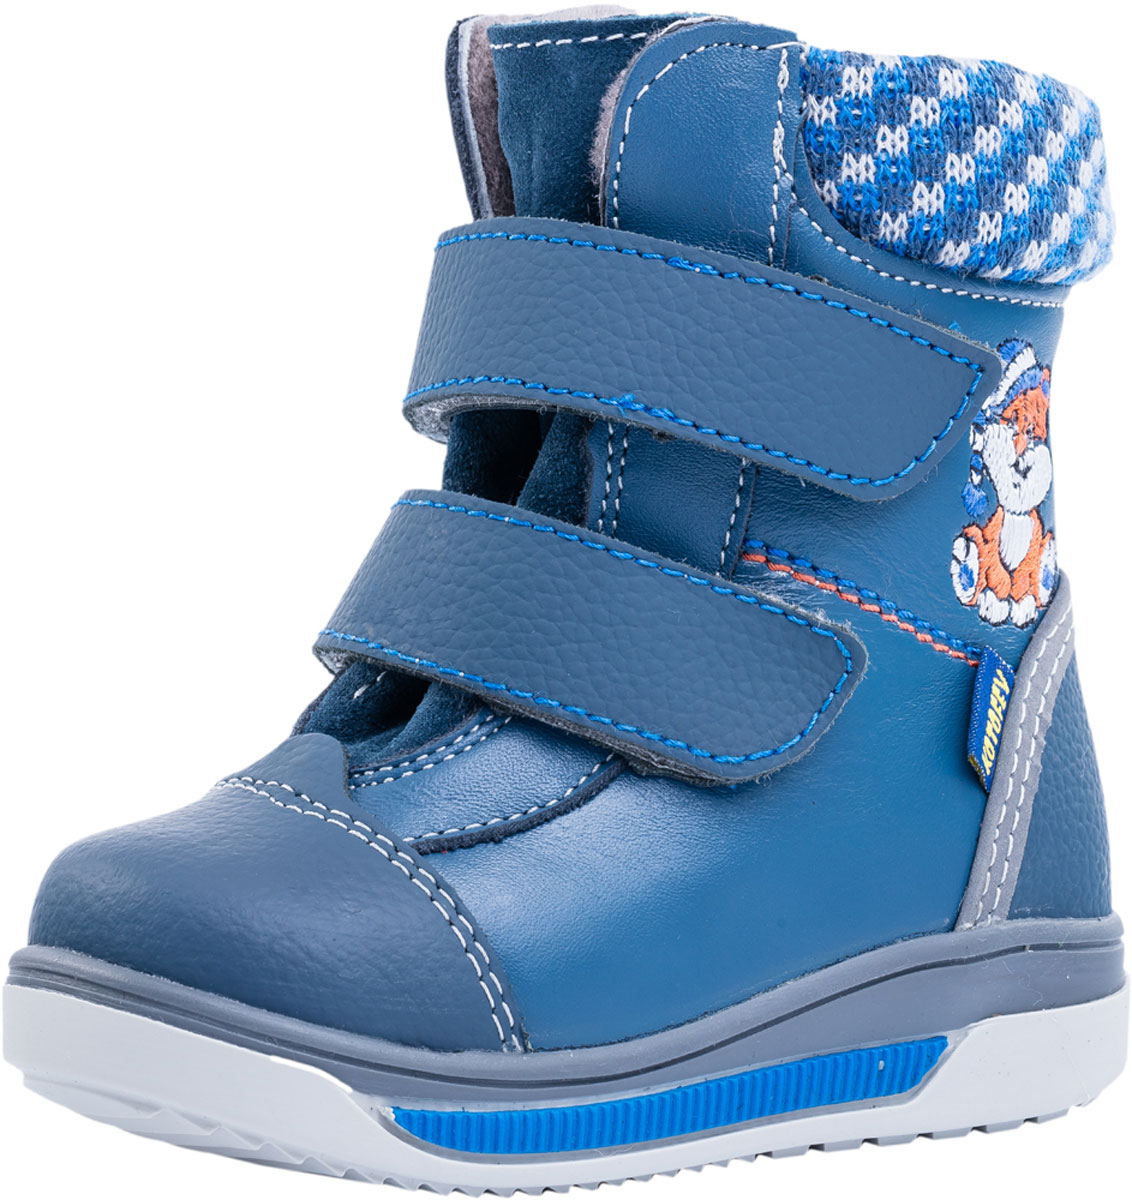 Ботинки для мальчика Котофей, цвет: синий. 152187-51. Размер 23